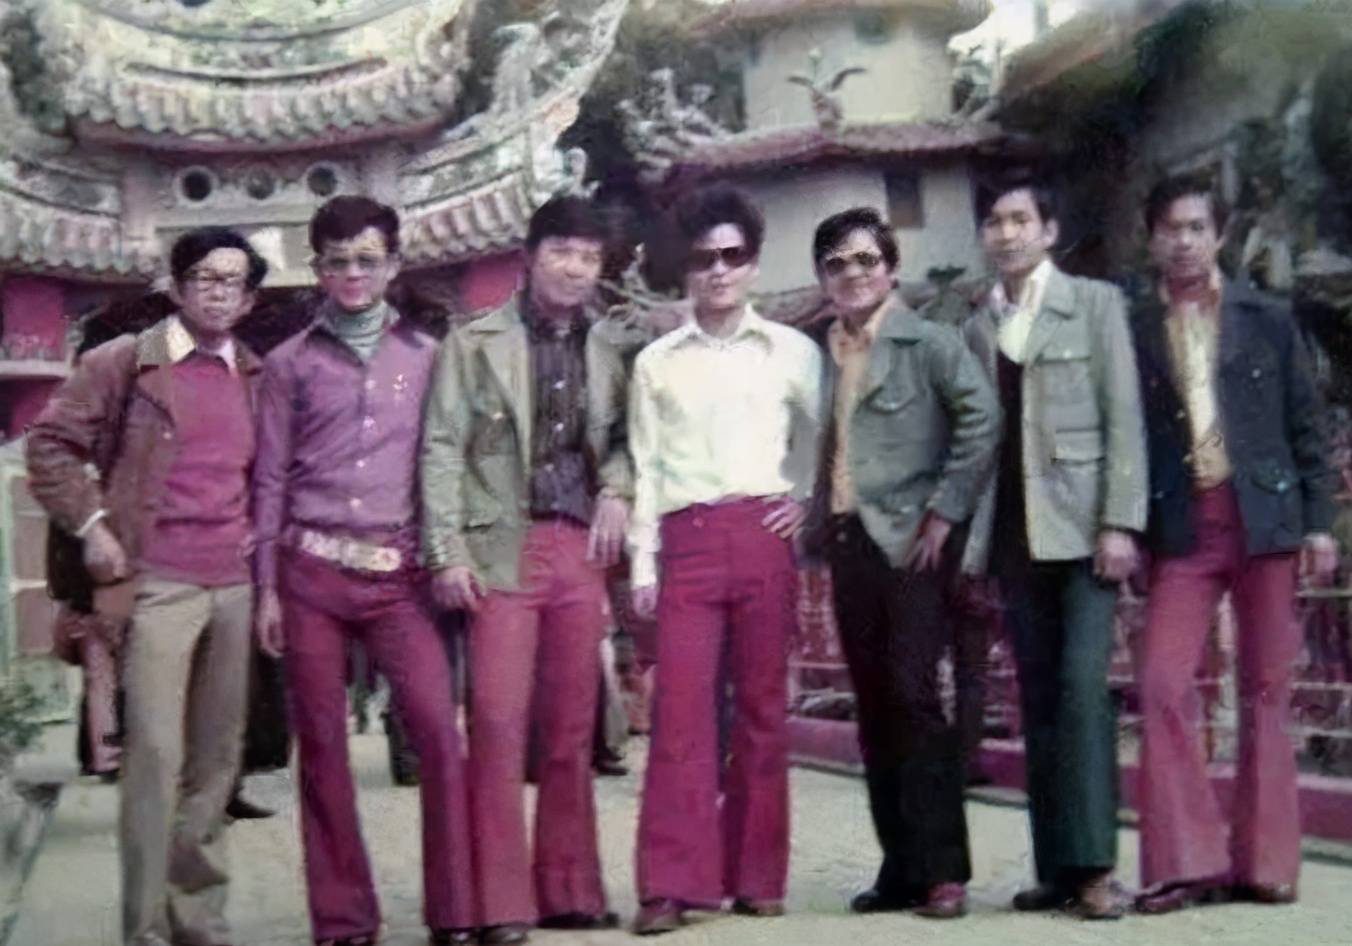 易中天:蛤蟆镜,体恤衫,喇叭裤,是80年代不良青年的标准着装